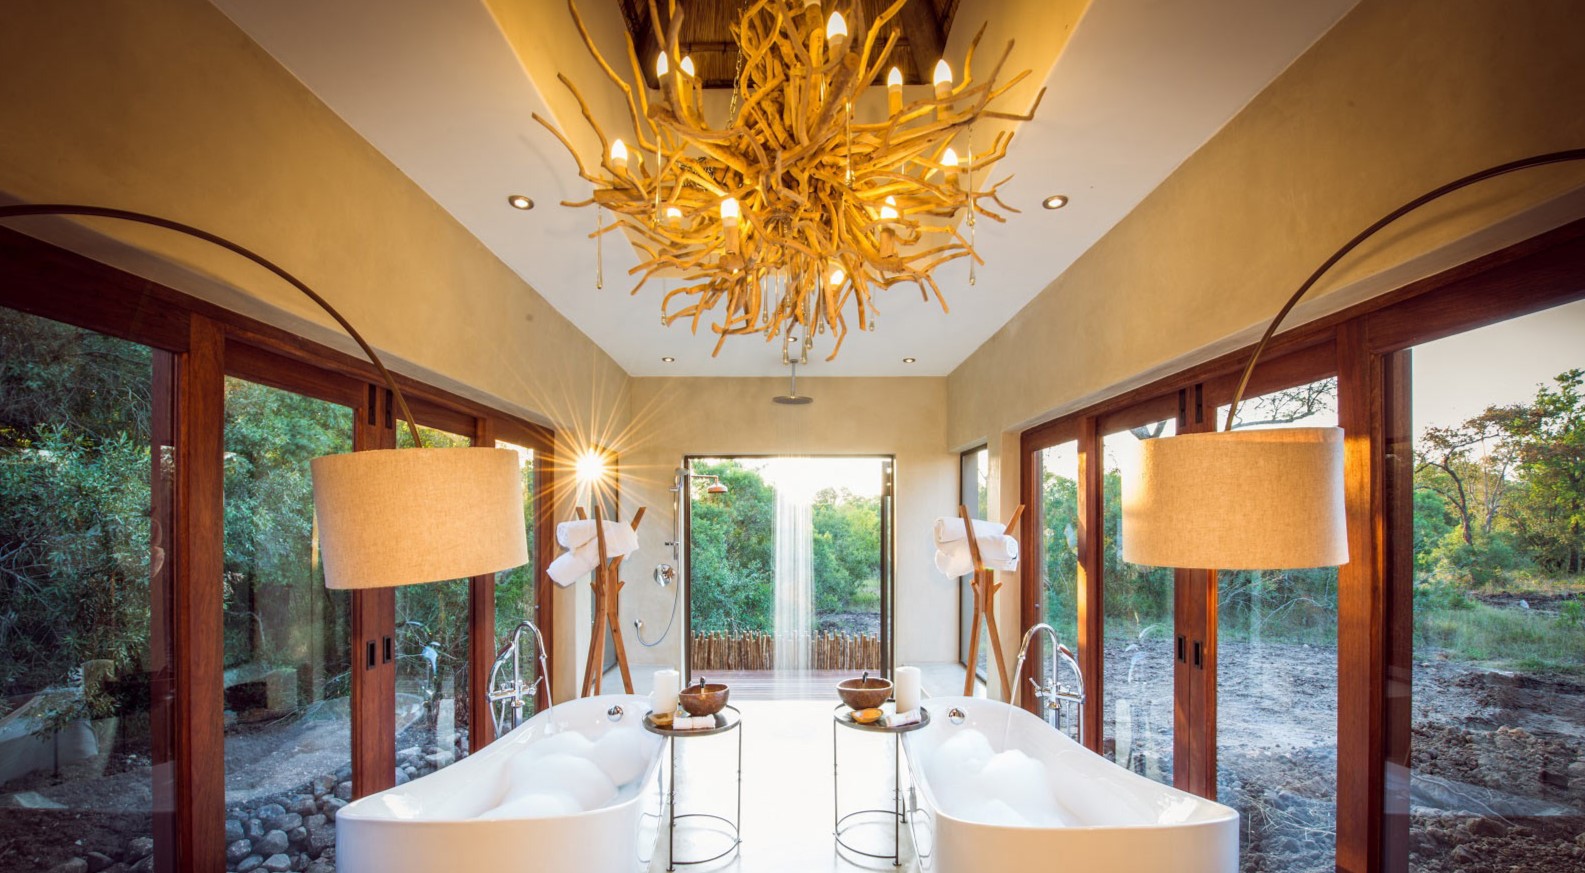 Алюминиевый потолок по своим свойствам идеально подойдет для ванной комнаты